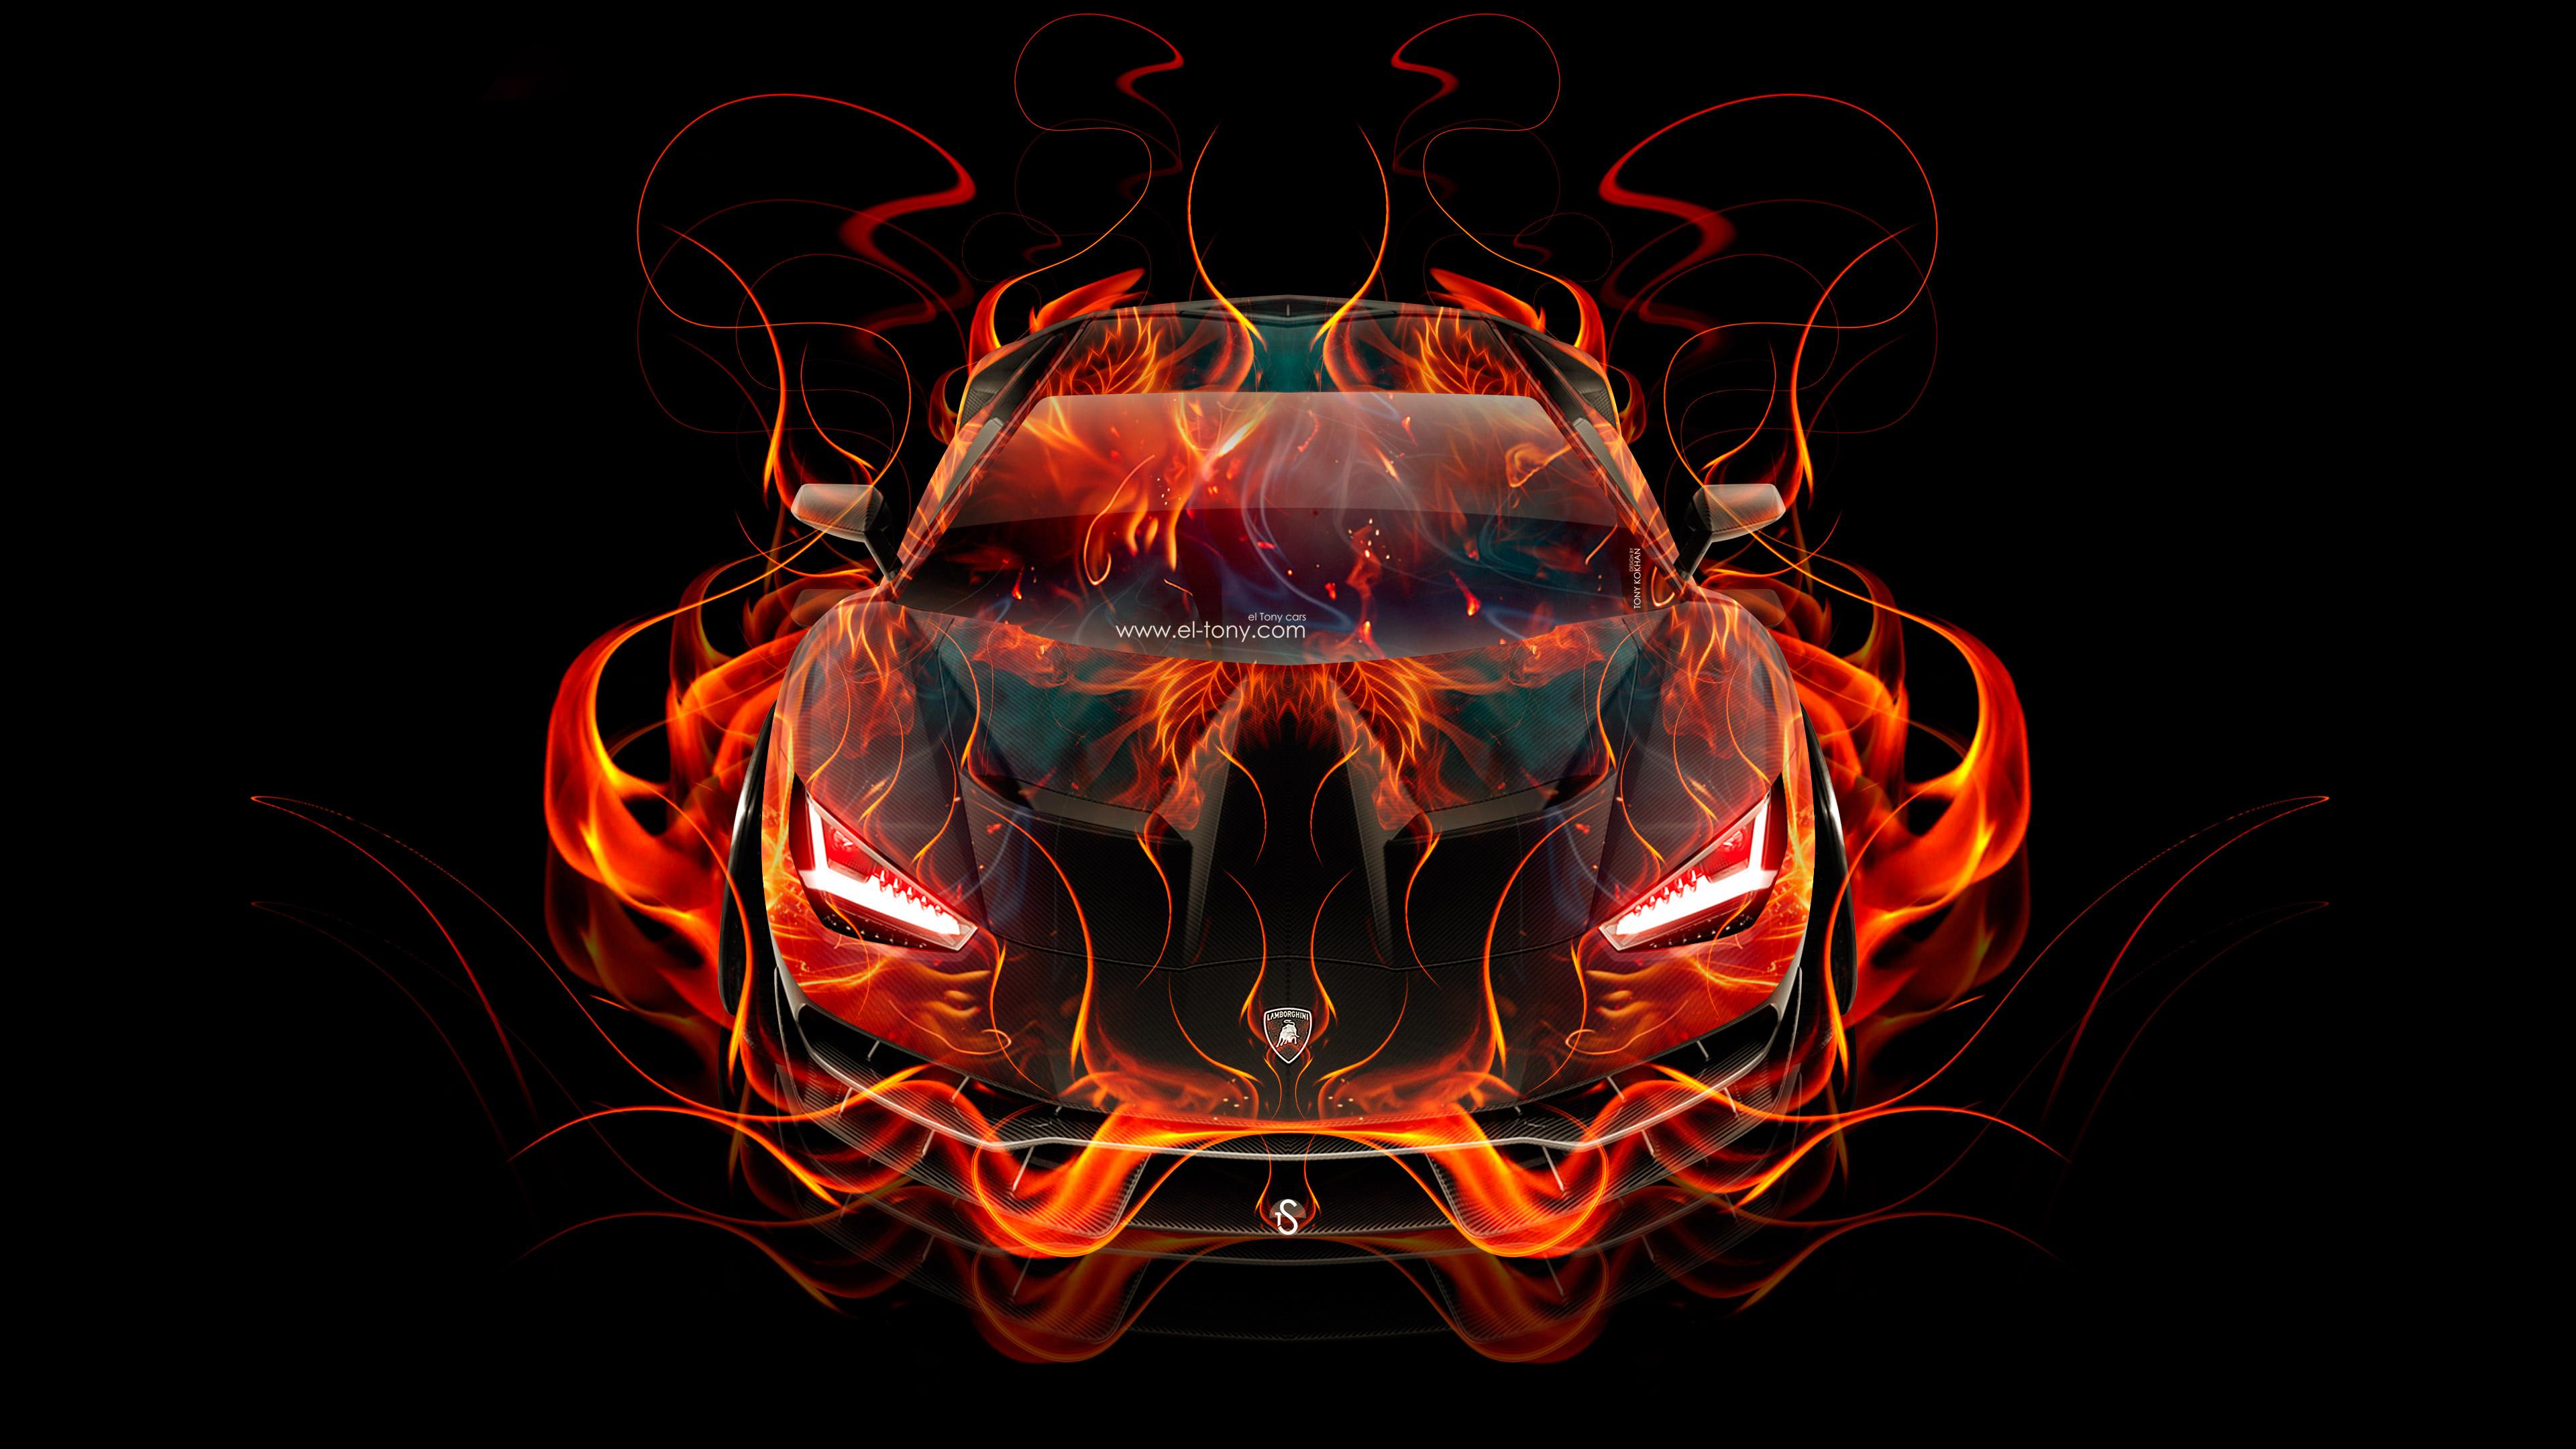 Lamborghini Centenario FrontUp Super Fire Abstract Car 2016 Wallpaper 4K el Tony